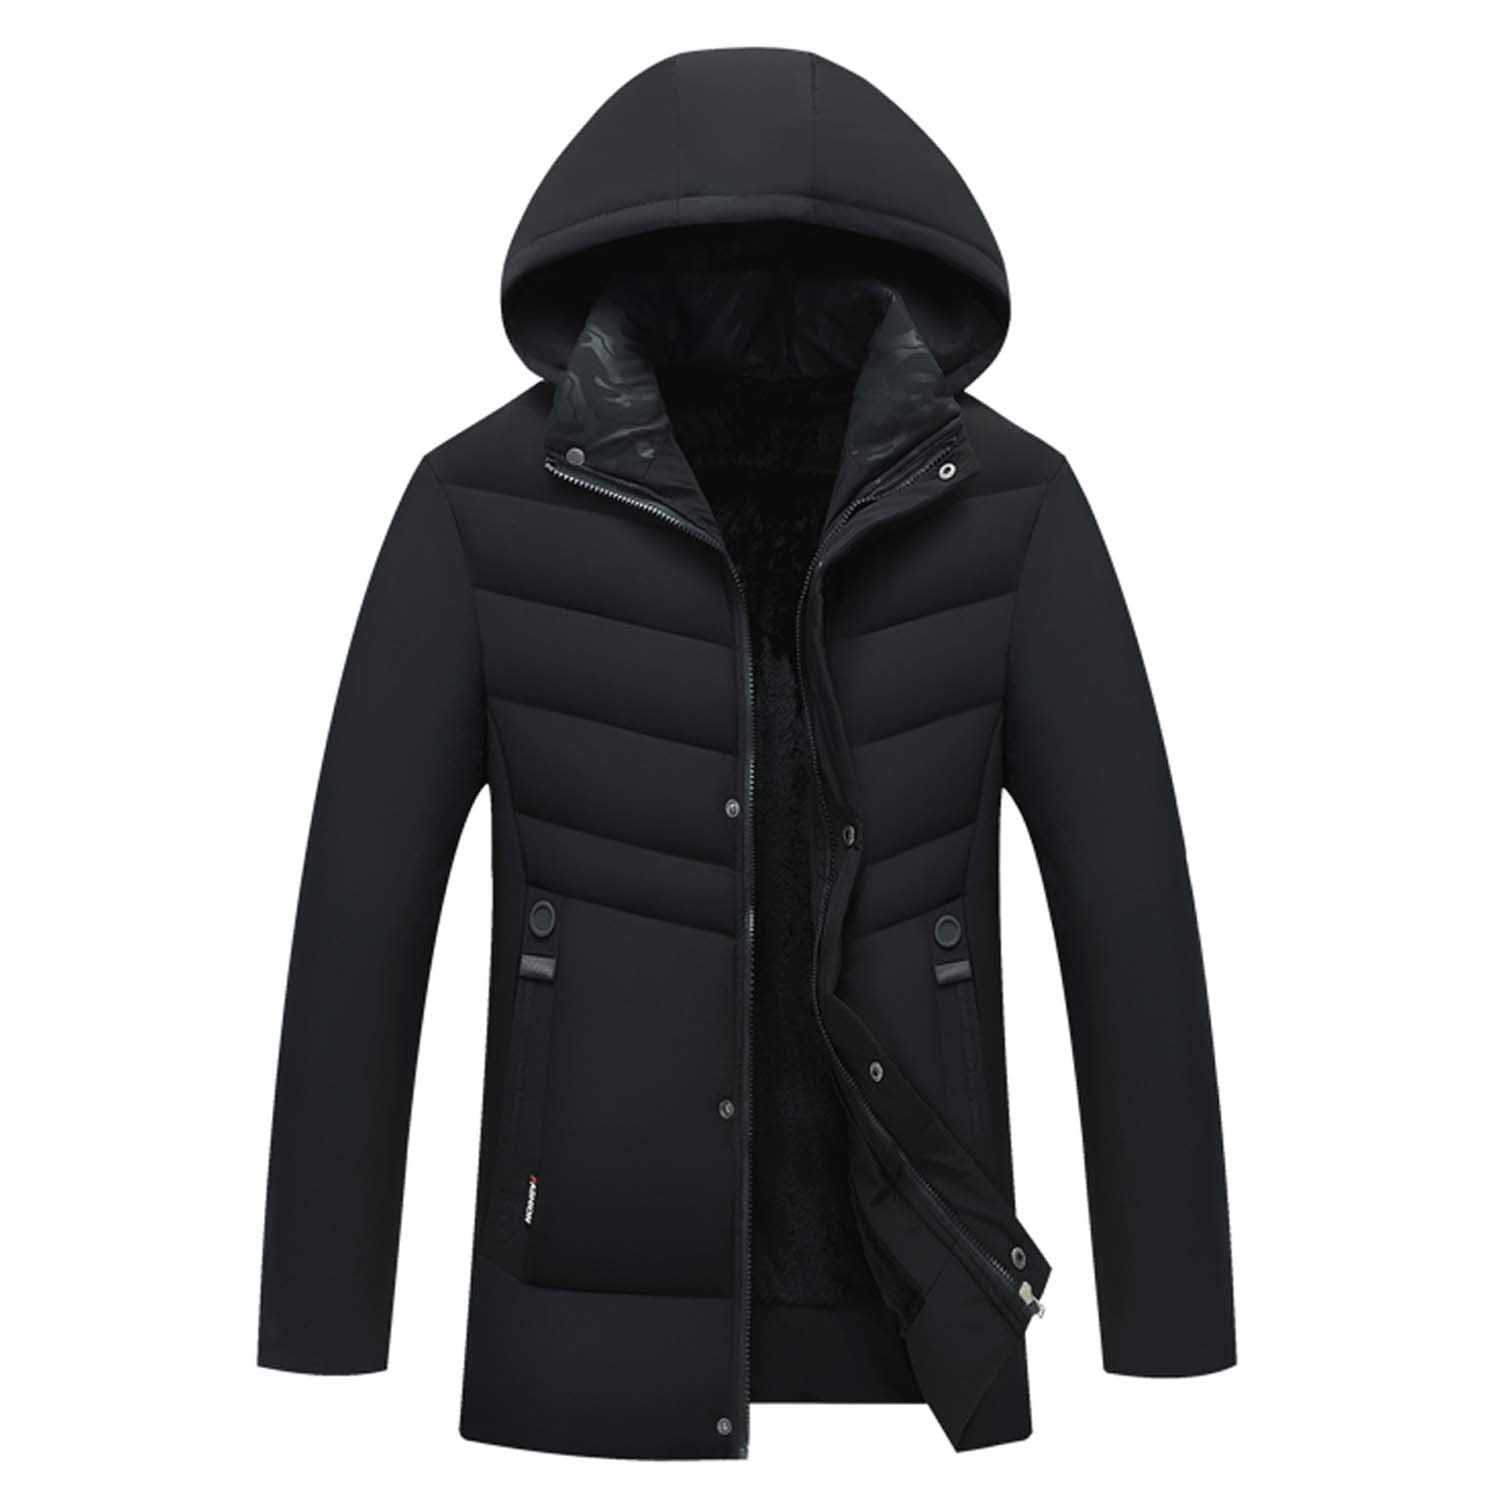 4THSEASON Men Winter Padded Work Coat Windproof Warm Jacket with Zipper ...